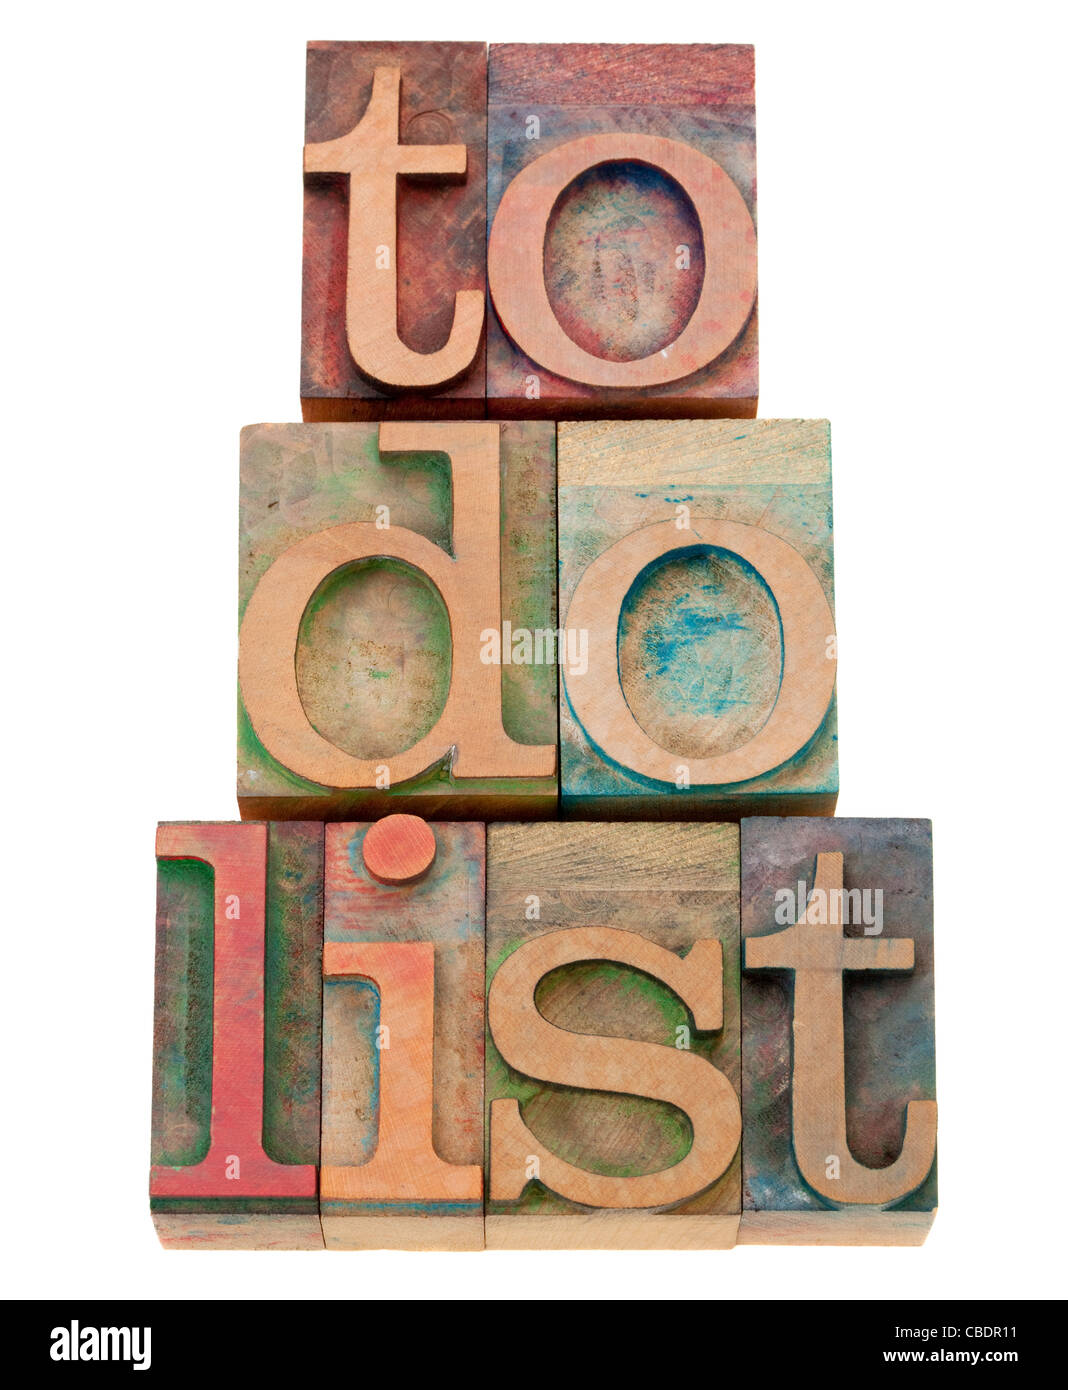 Lista de tareas: tareas de gestión concepto - texto aislado en vintage tipografía bloques de madera Foto de stock